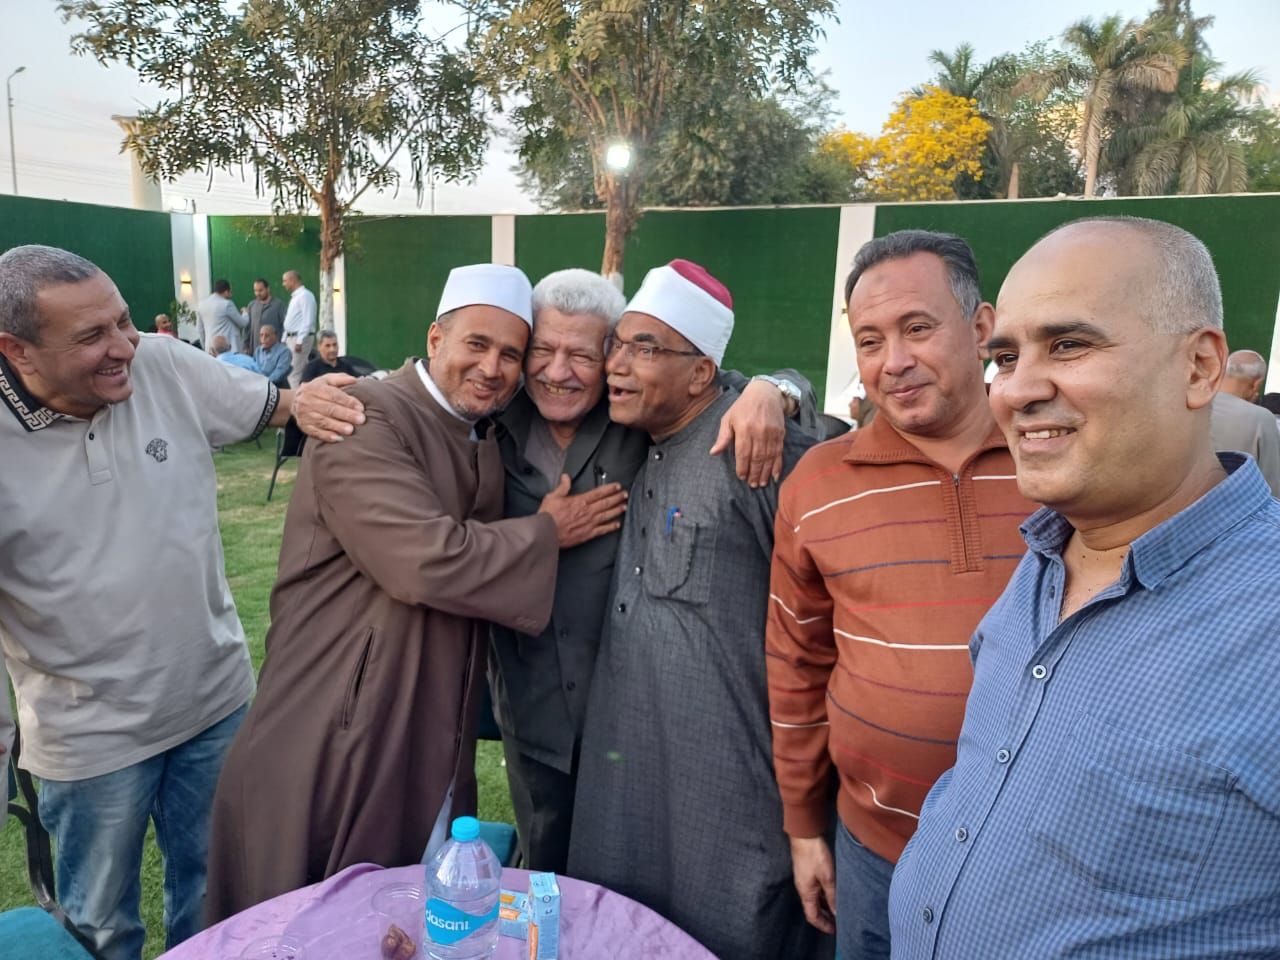 العم فوزى مع أصدقائه المسلمين